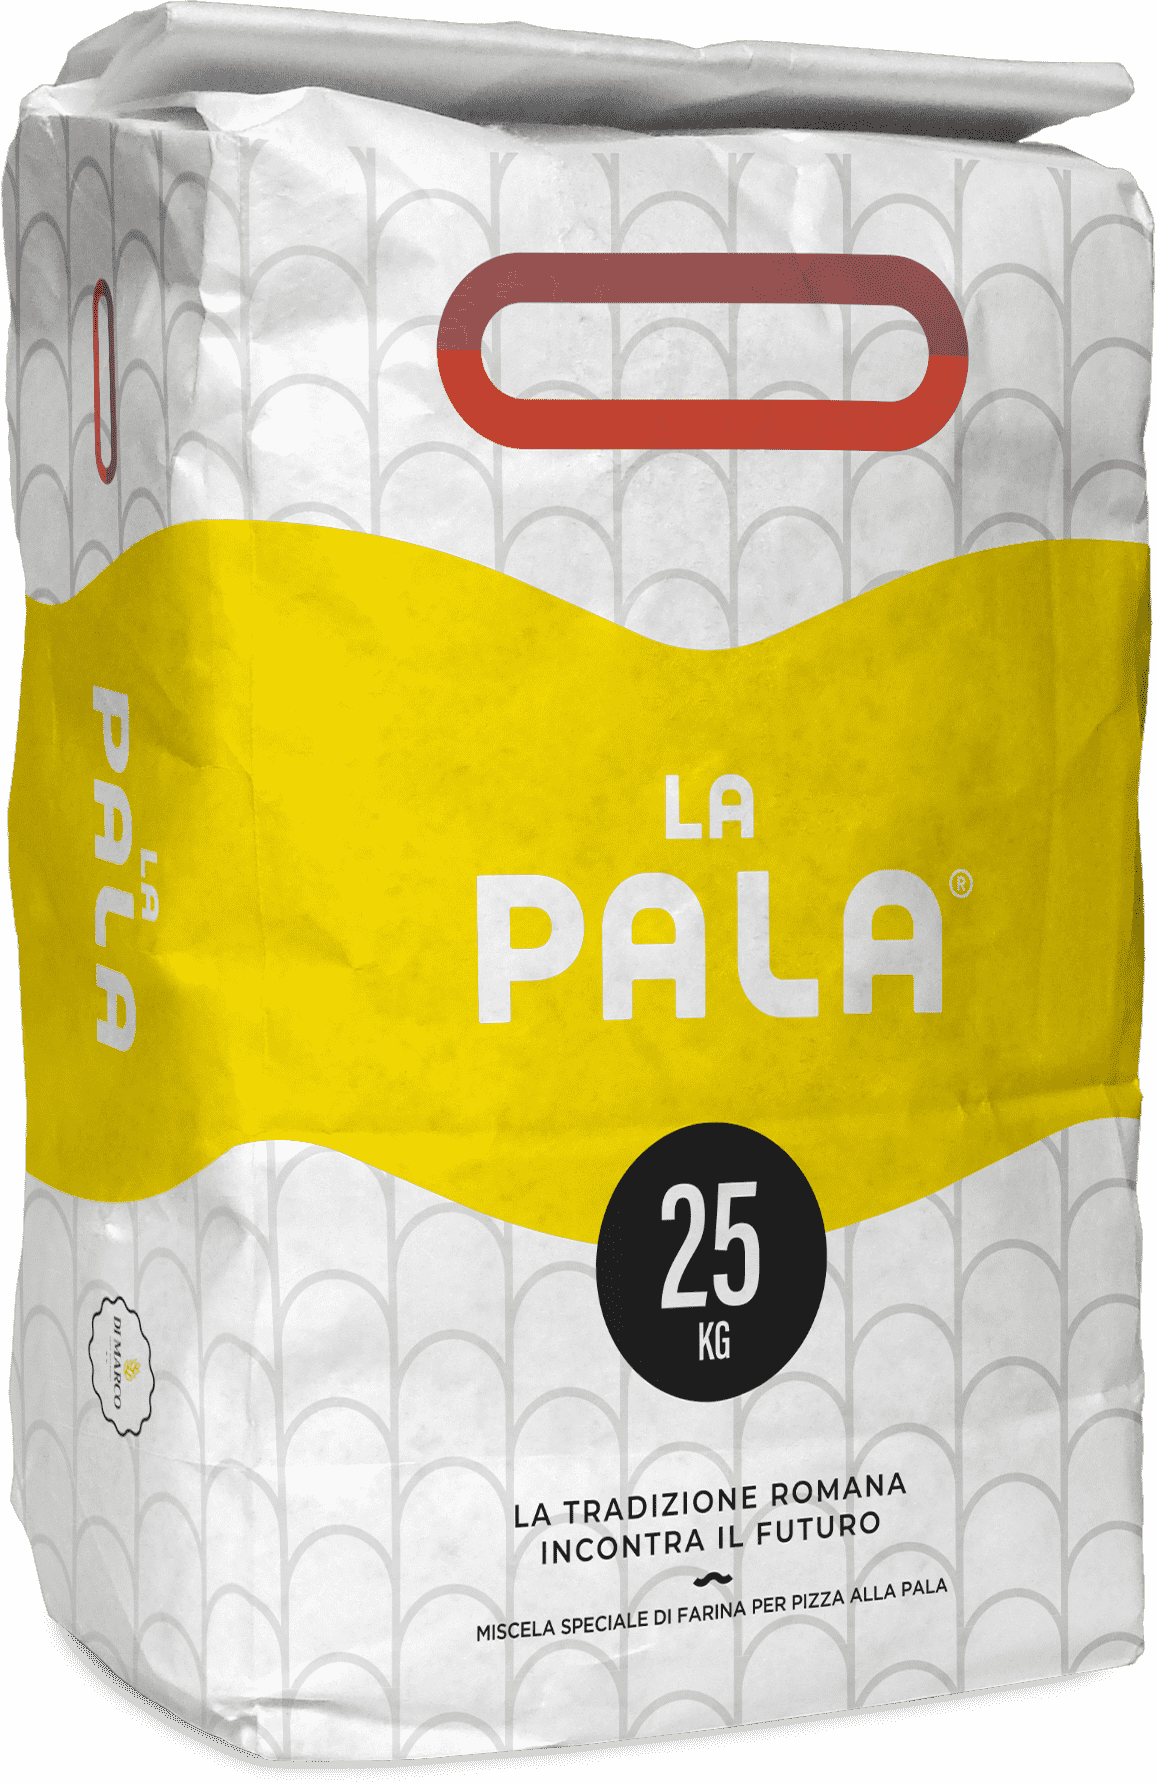 Sack of flour La Pala (Board))